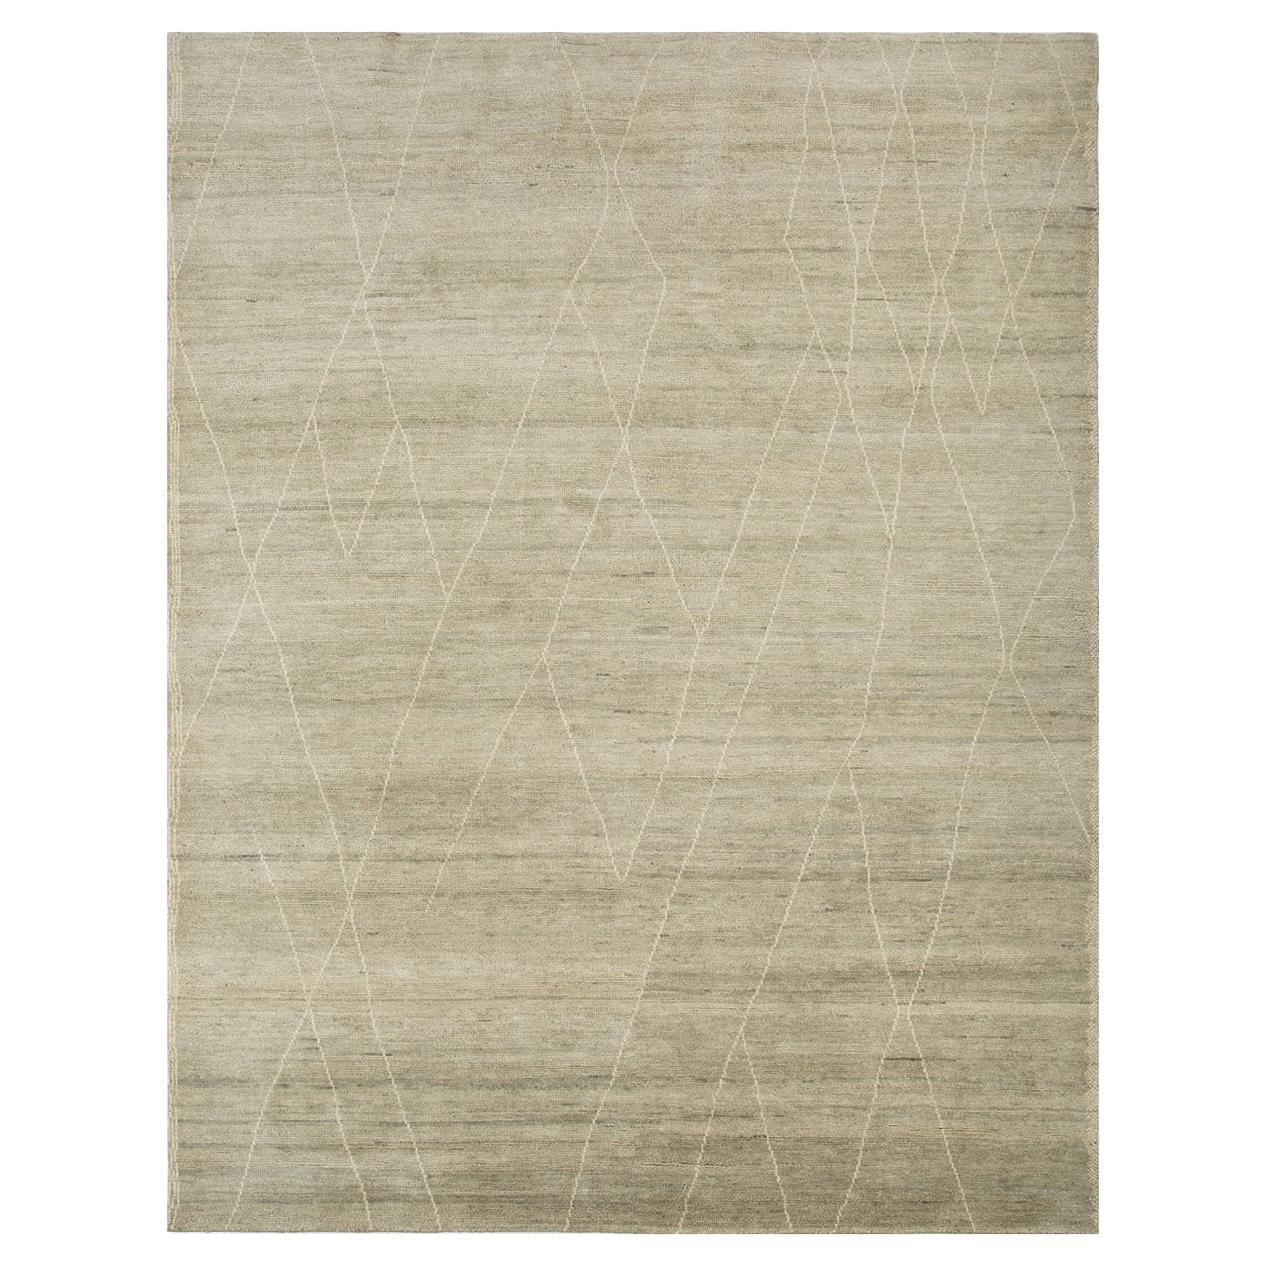 Tapis Taup de Rural Weavers, noué, laine, 240 x 300 cm